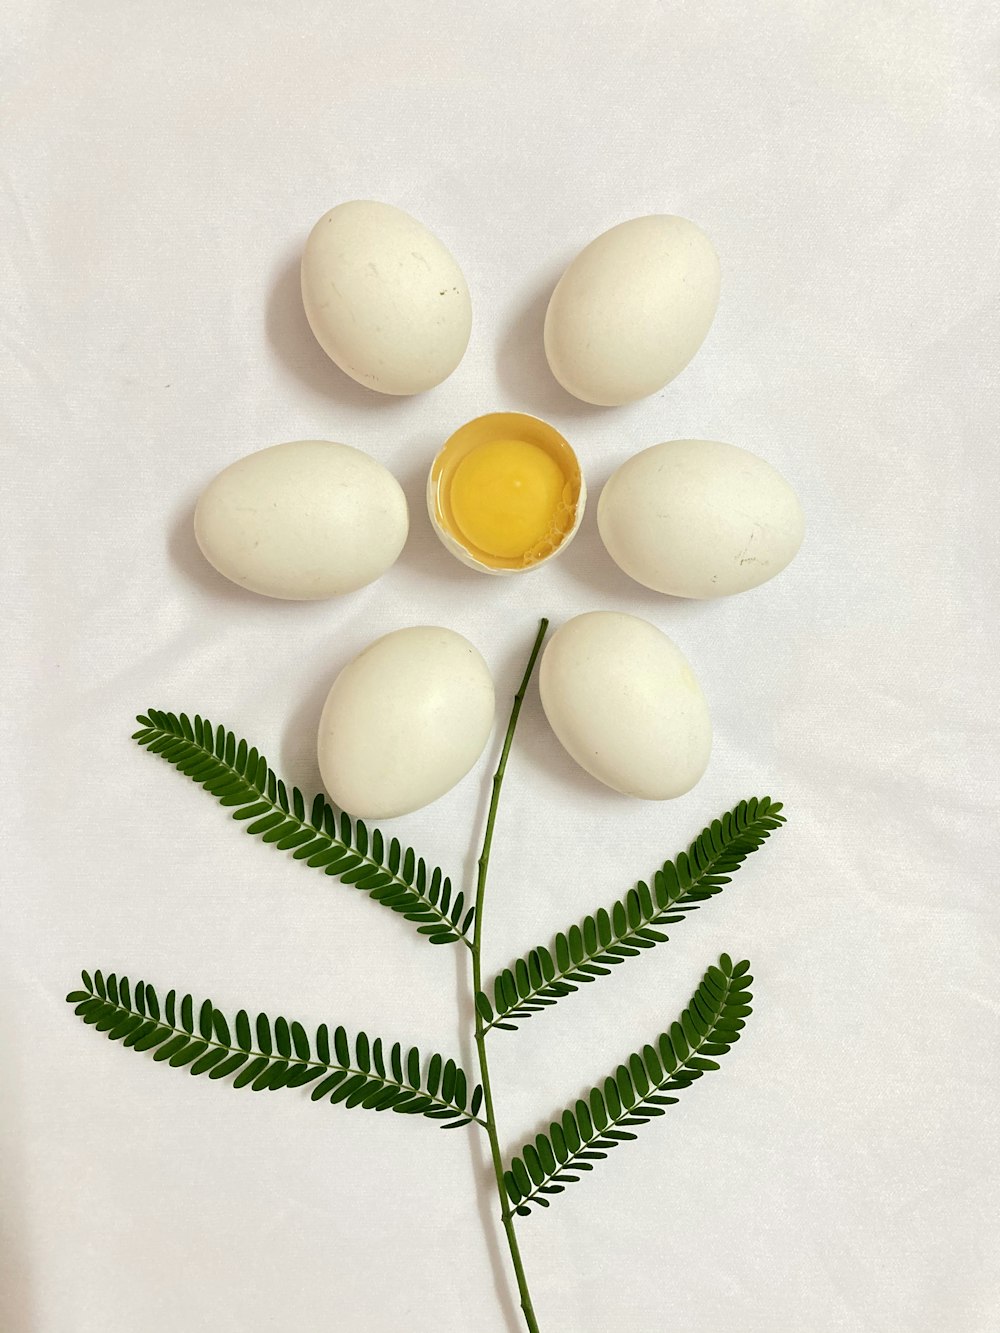 white egg beside green leaves